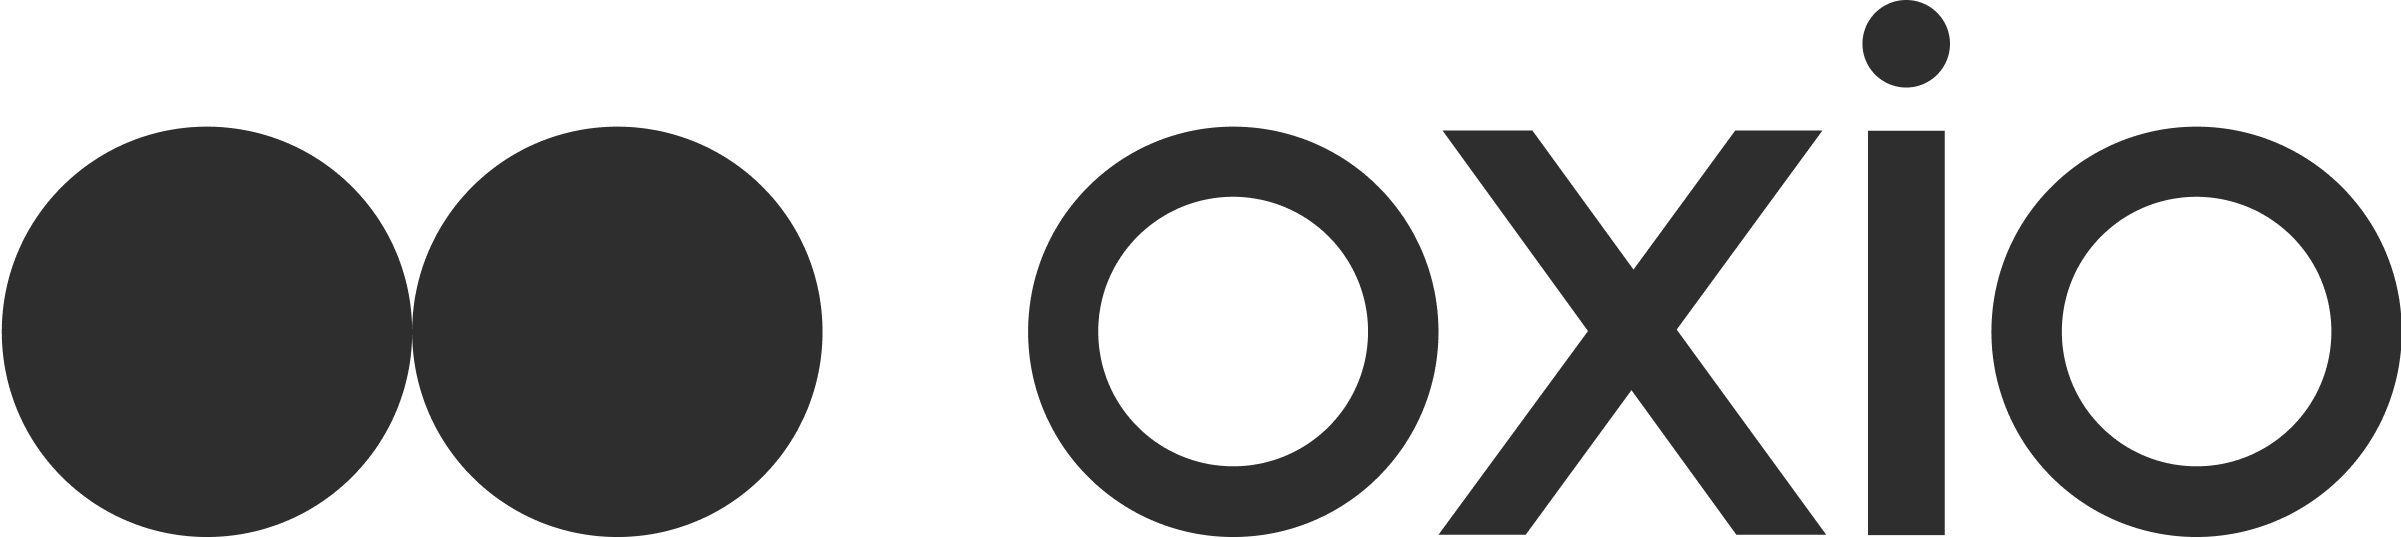 Oxio logo